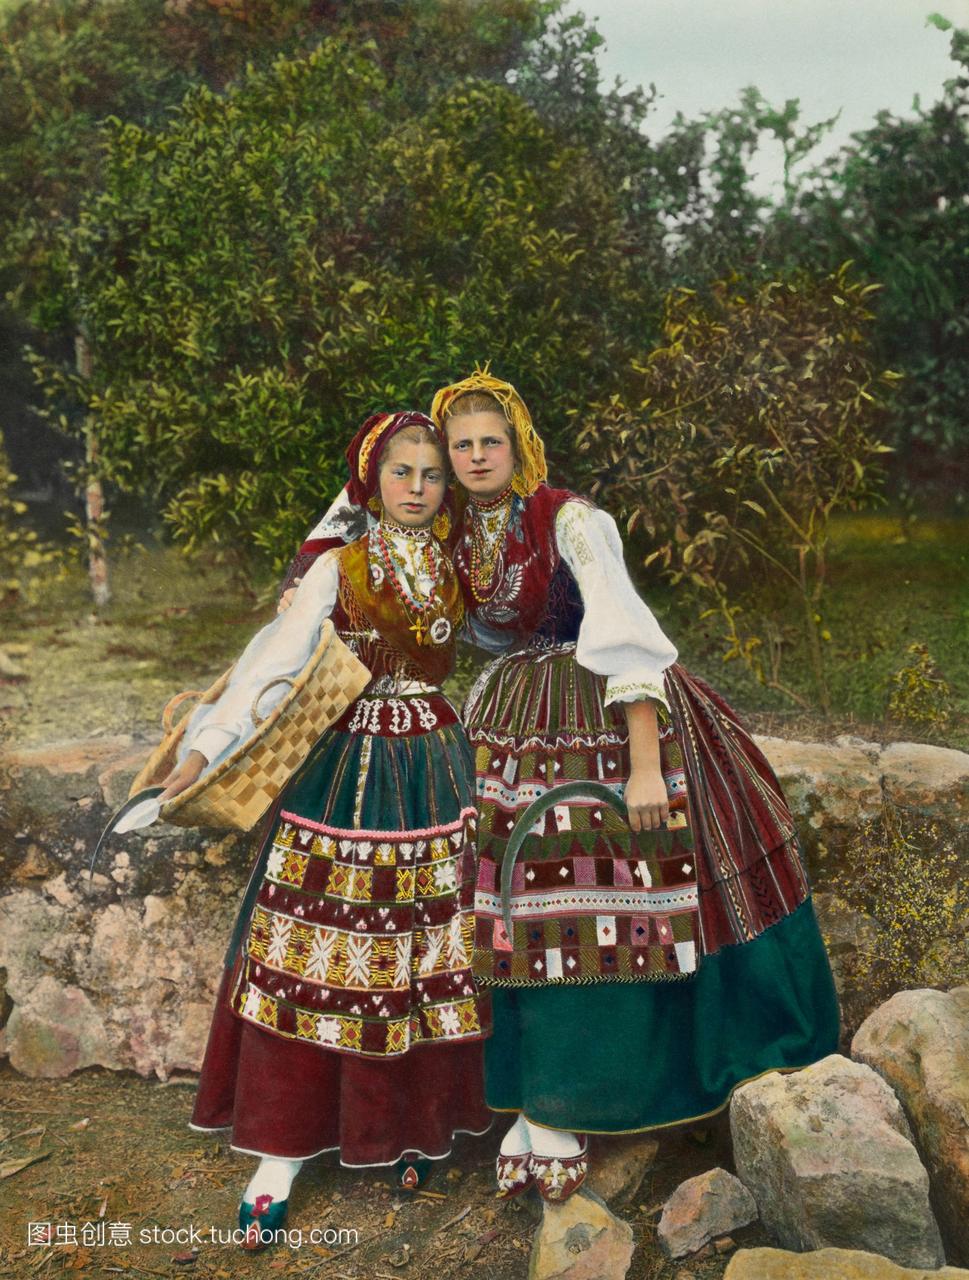 两名葡萄牙妇女穿着土著服装的非正式画像。